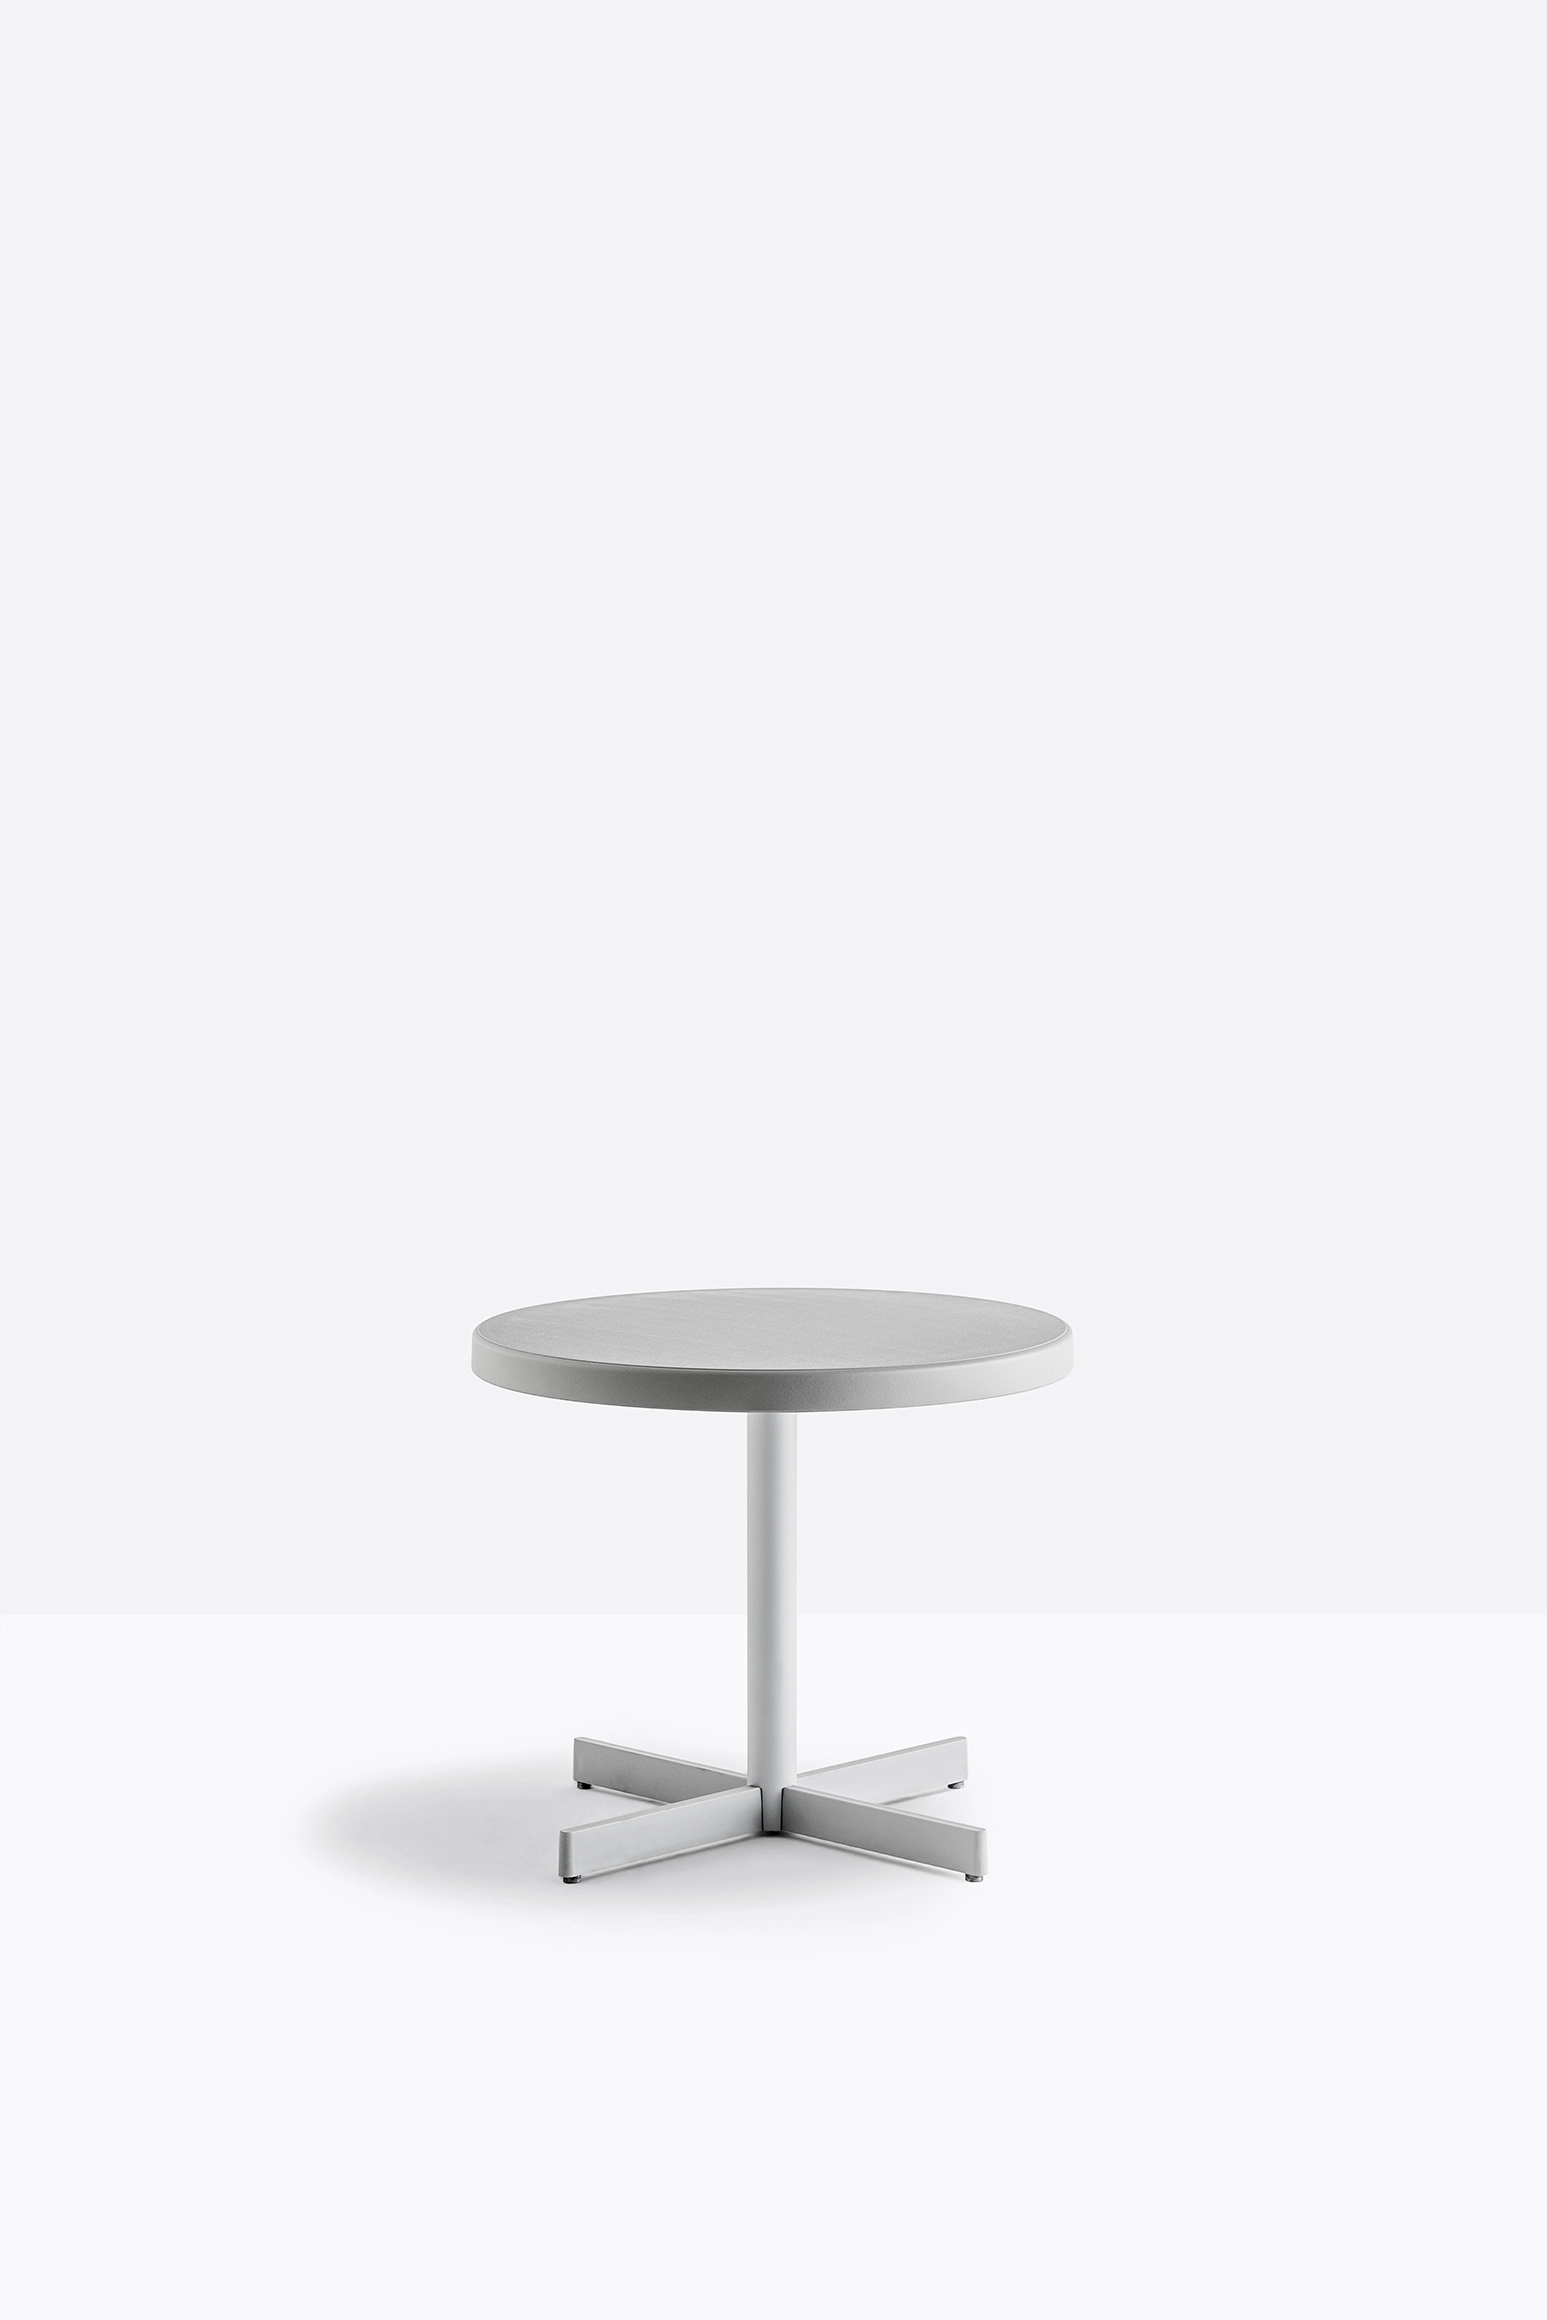 Tischgestell PLASTIC-X 4740/H500 von Pedrali